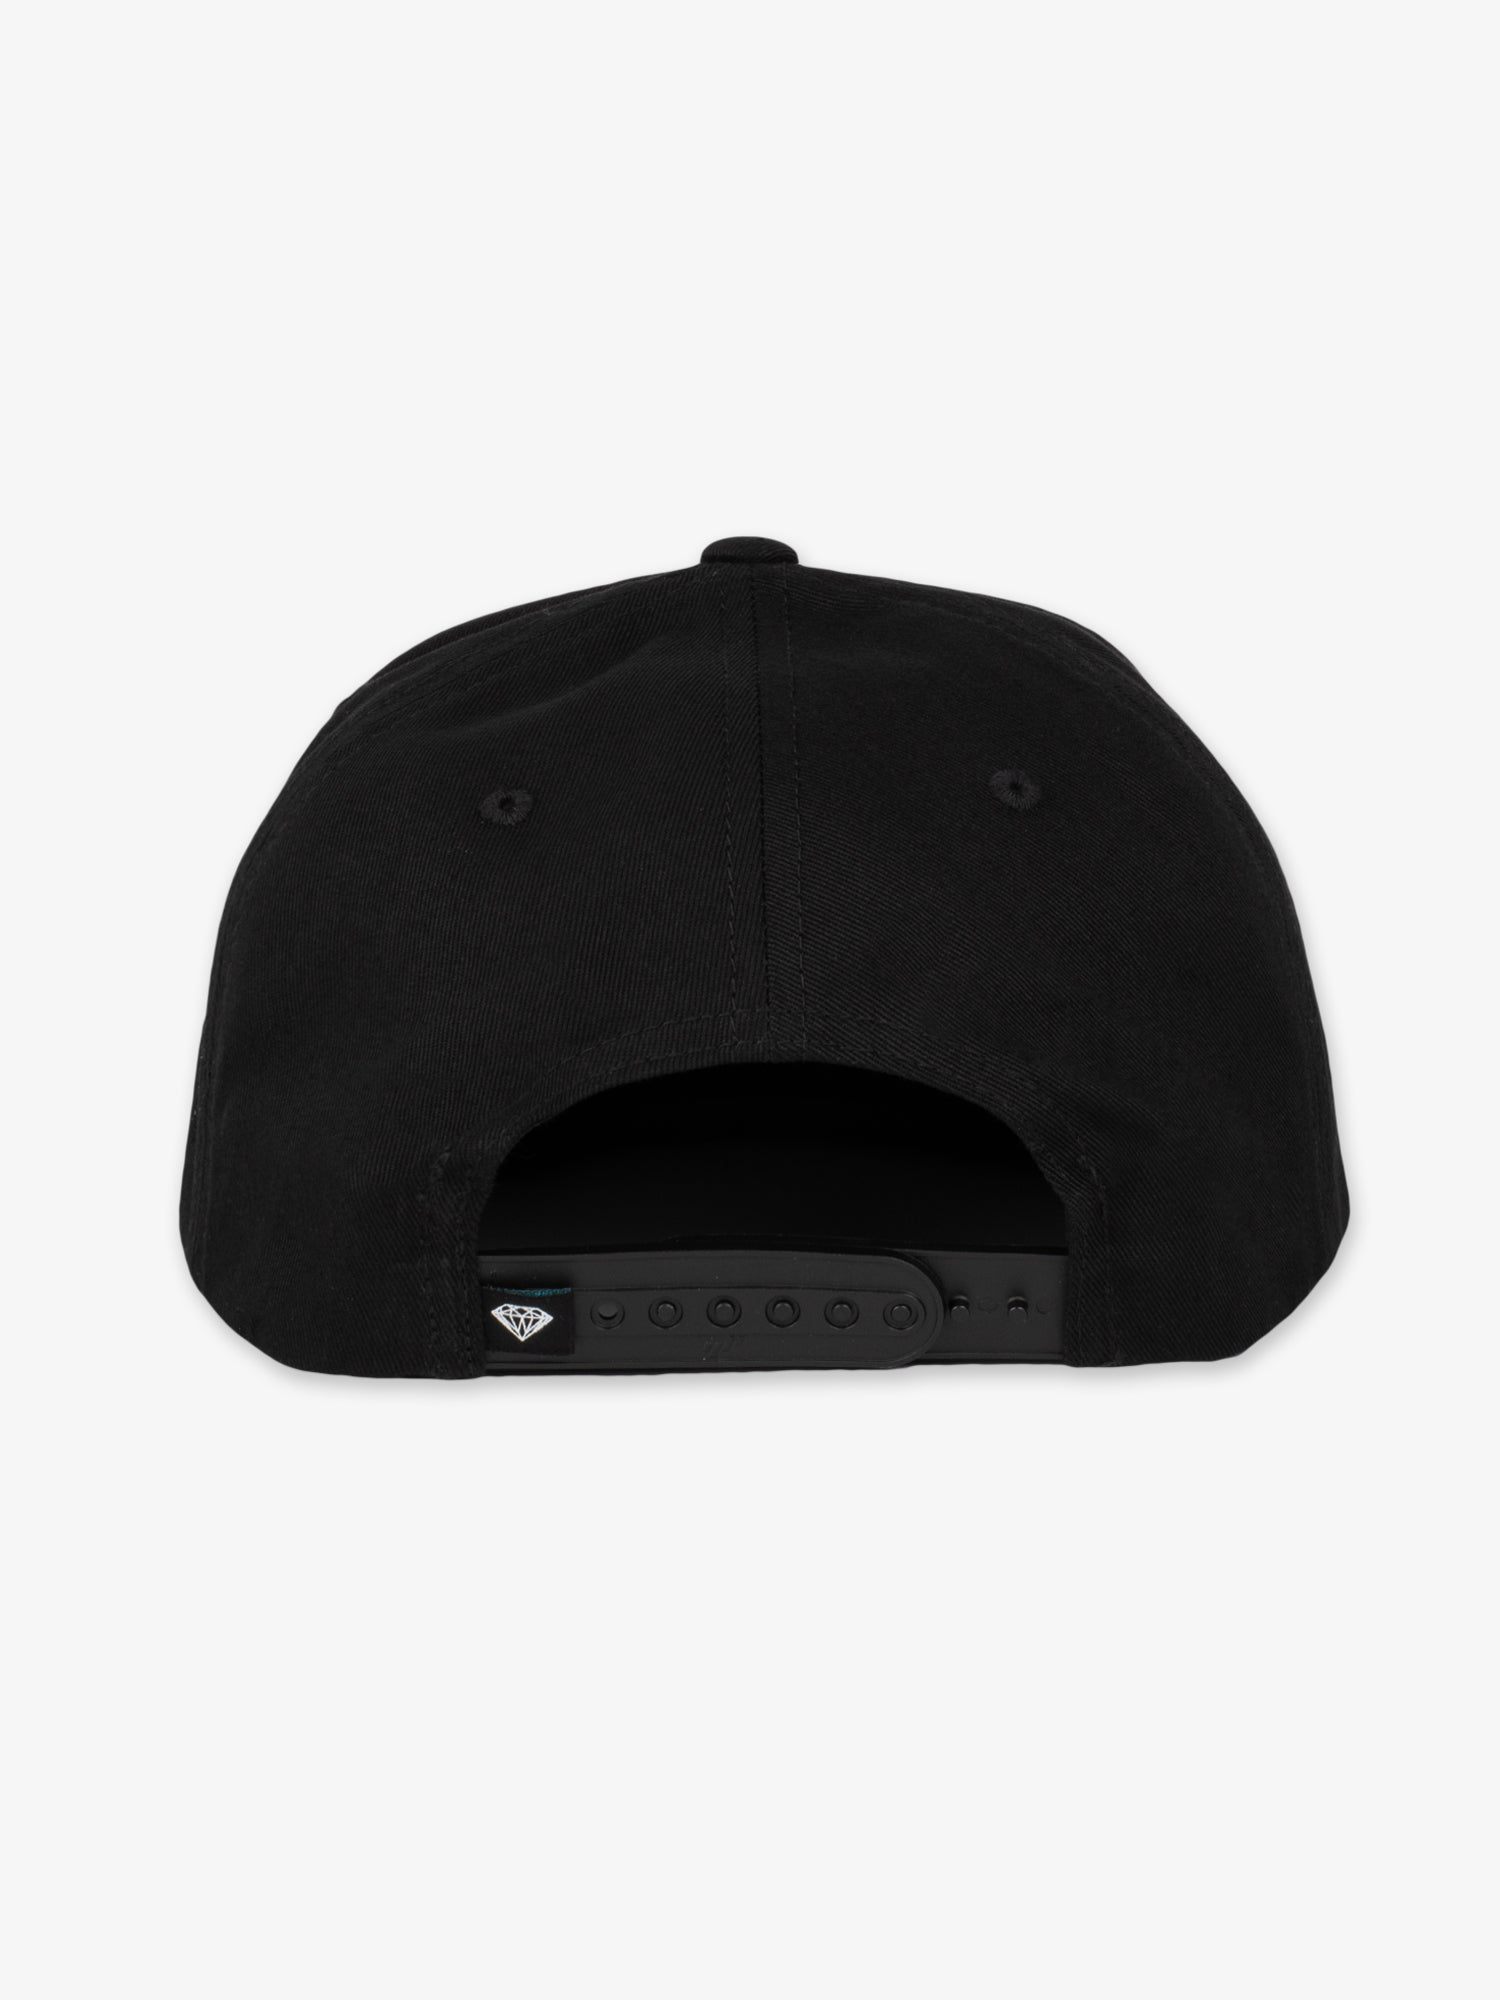 OG Seal Hat - Black